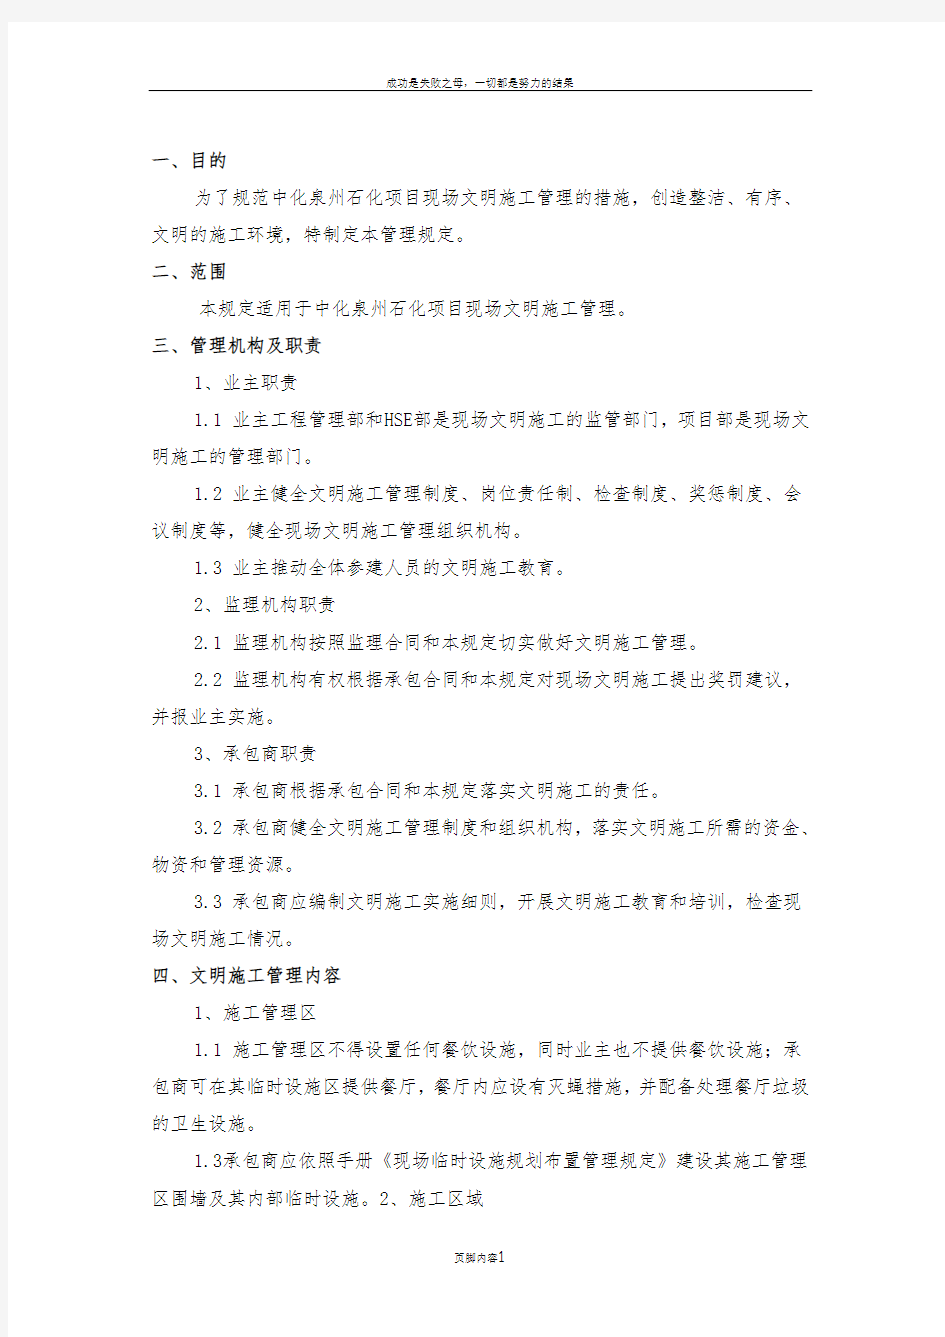 中化泉州石化有限公司项目管理手册-文明施工管理规定